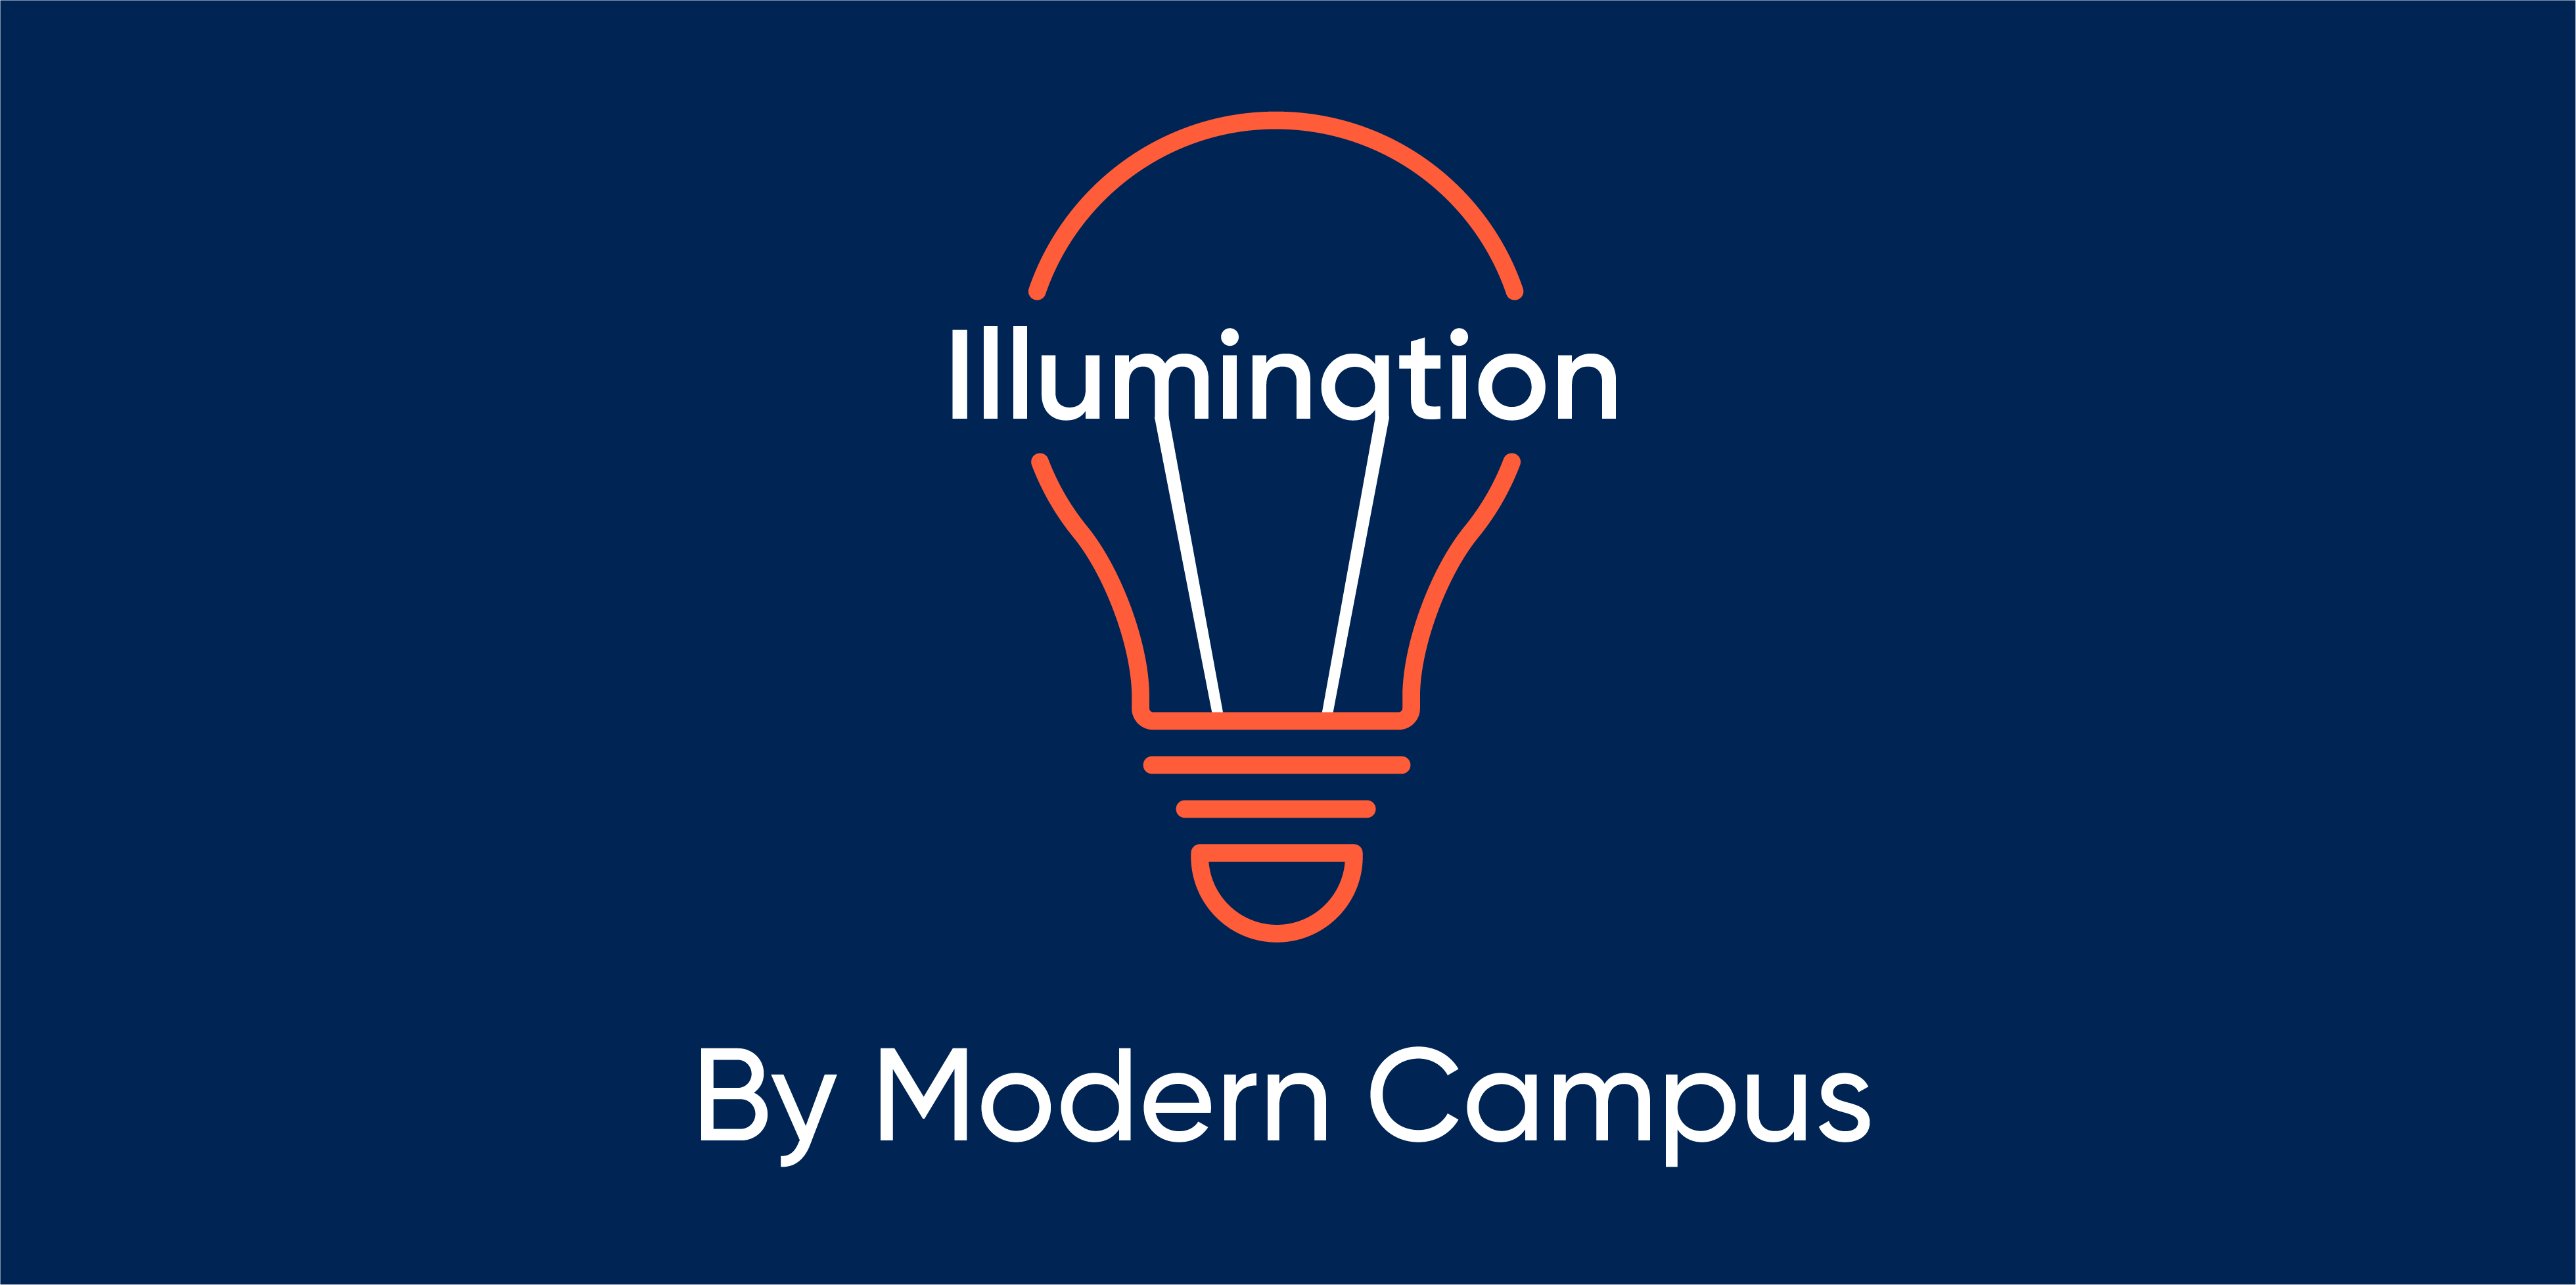 Episode 134: Illumination by Modern Campus